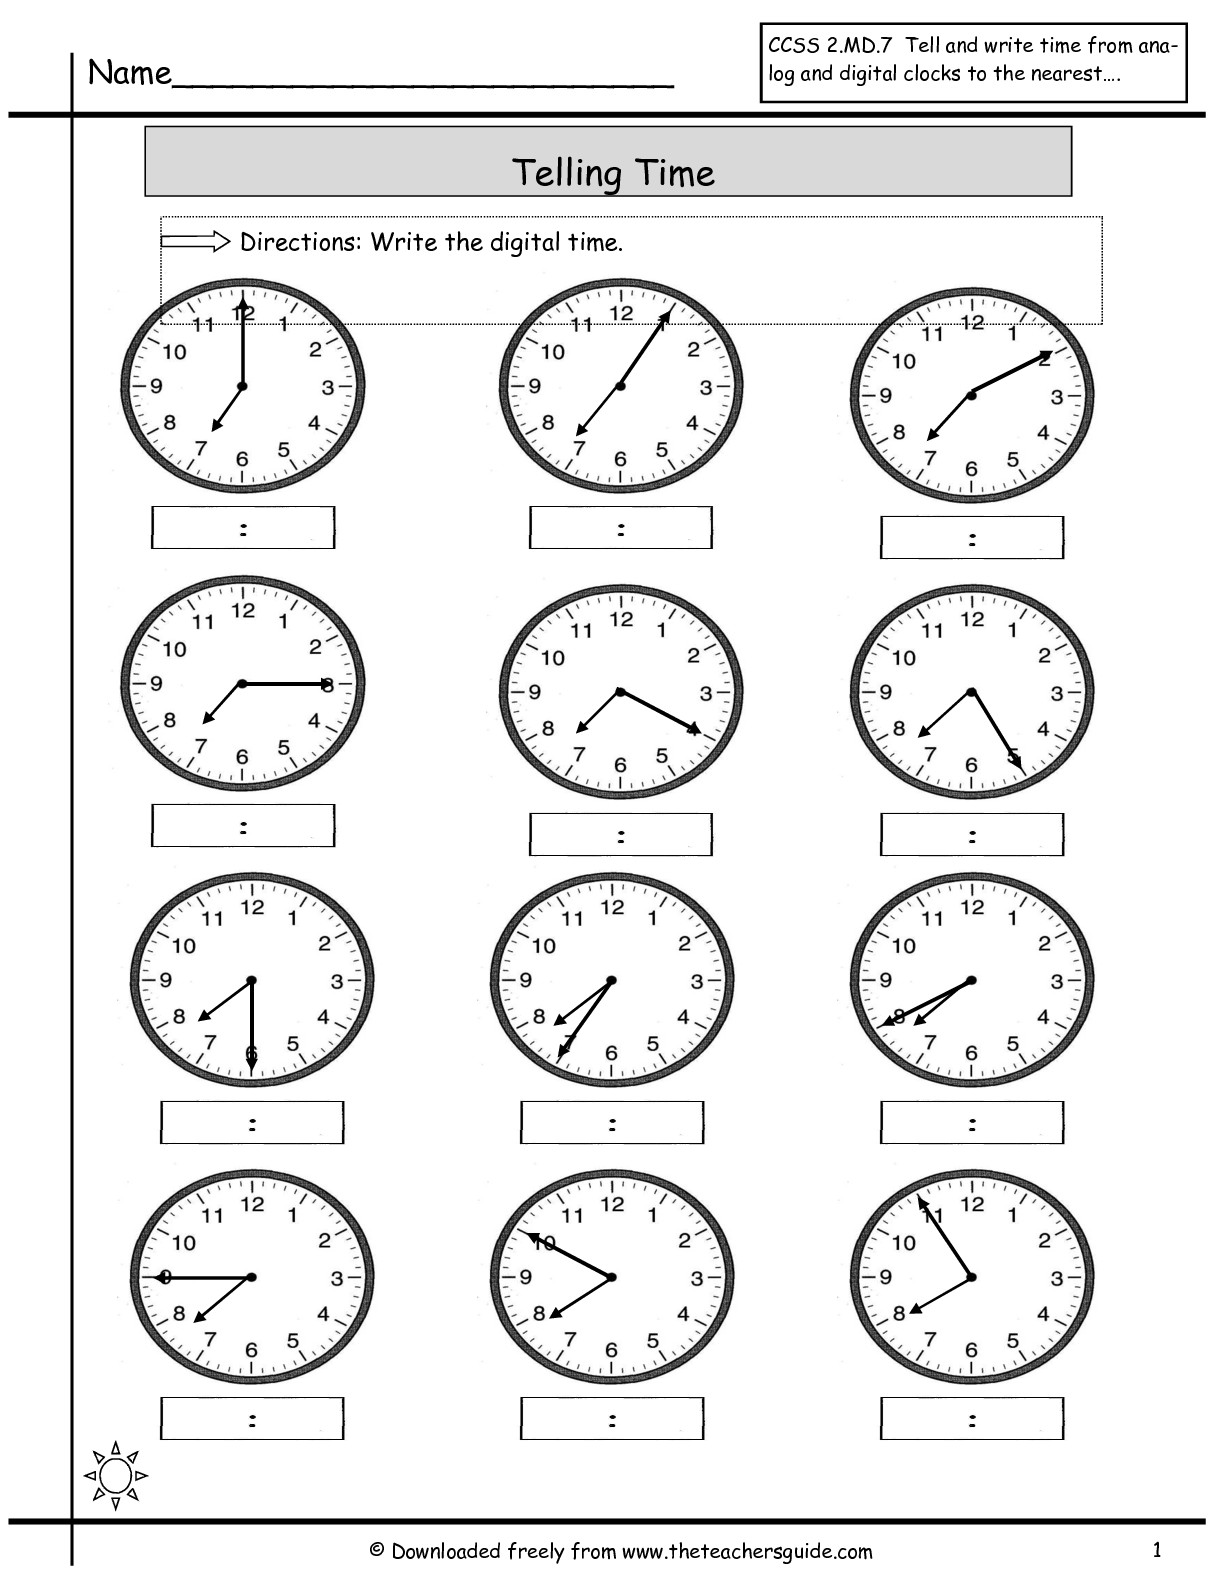 13 Best Images of Time Worksheets PDF - Blank Digital ...